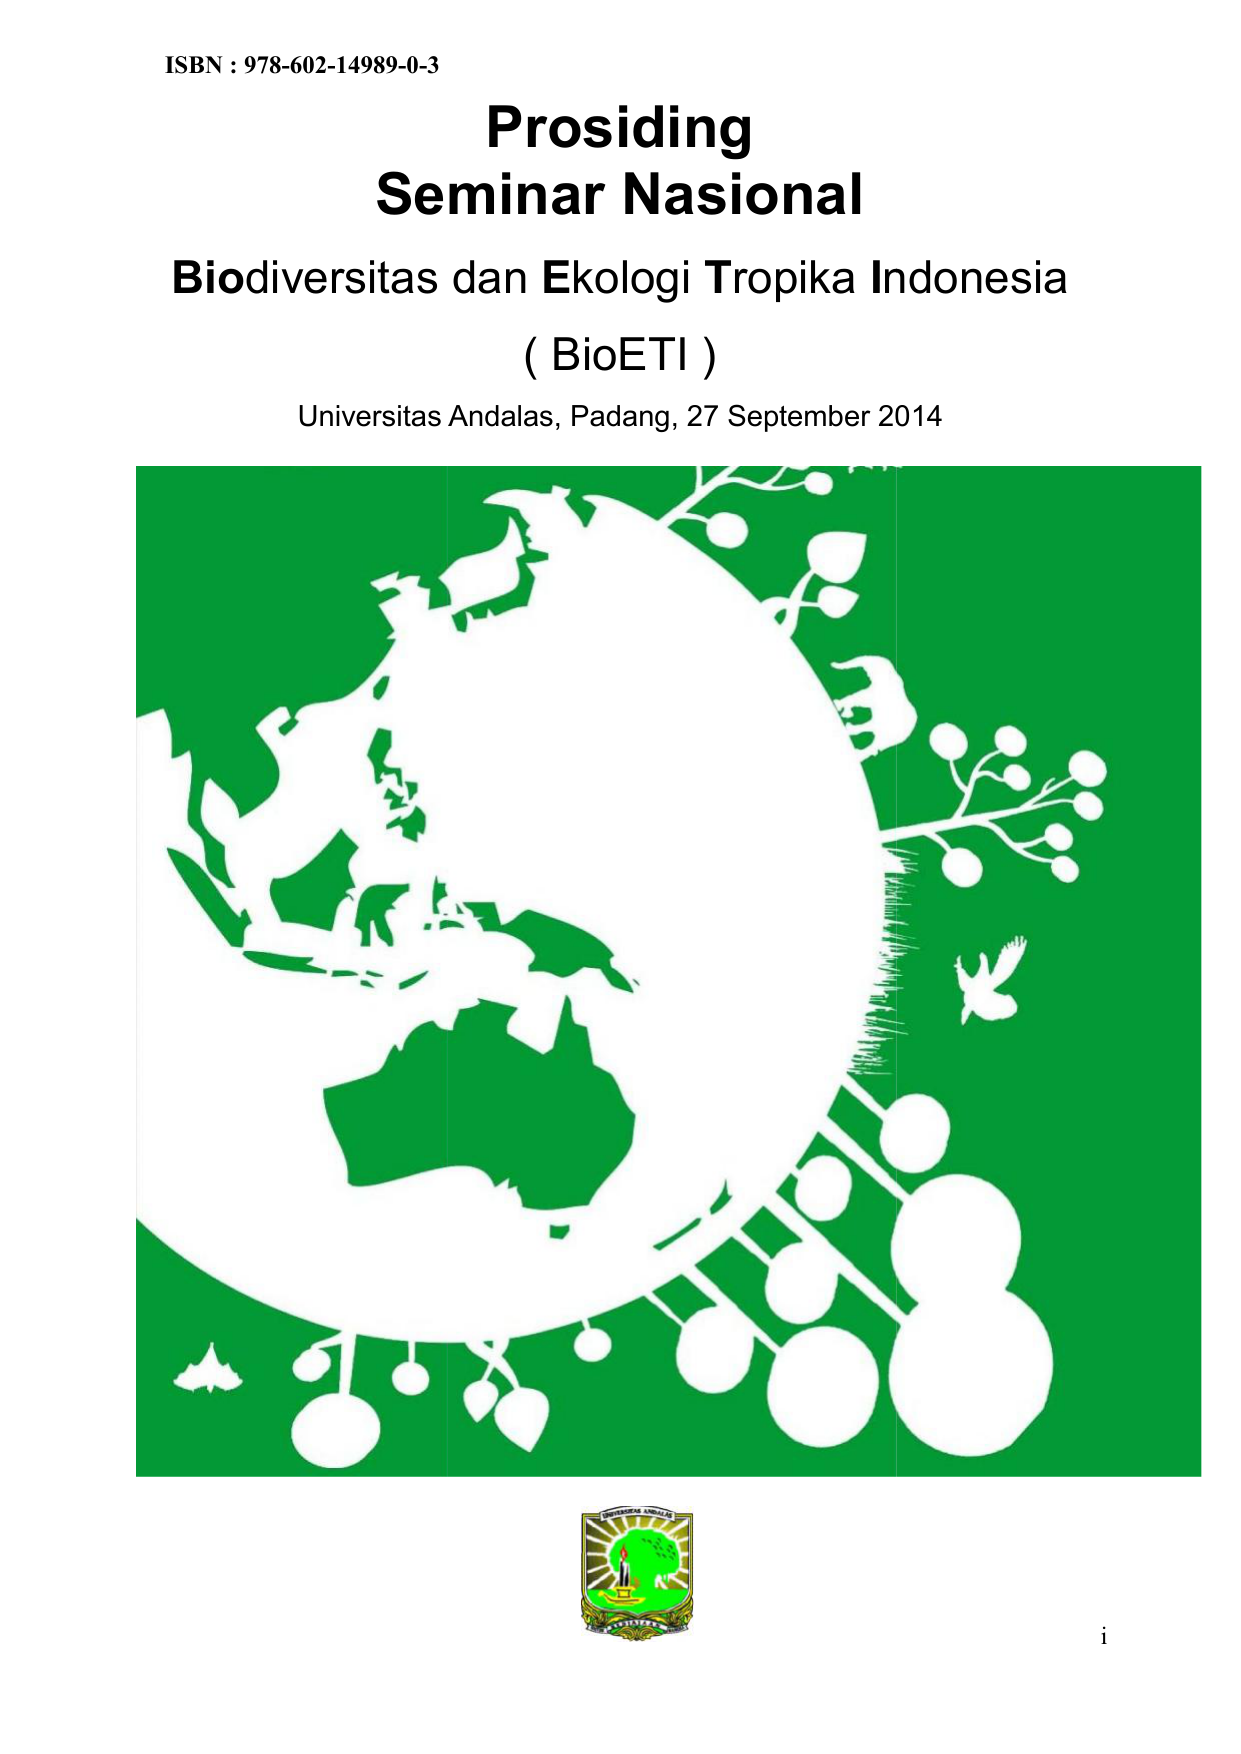 ISBN 978 602 0 3 Prosiding Seminar Nasional Biodiversitas dan Ekologi Tropika Indonesia BioETI Universitas Andalas Padang 27 September 2014 i